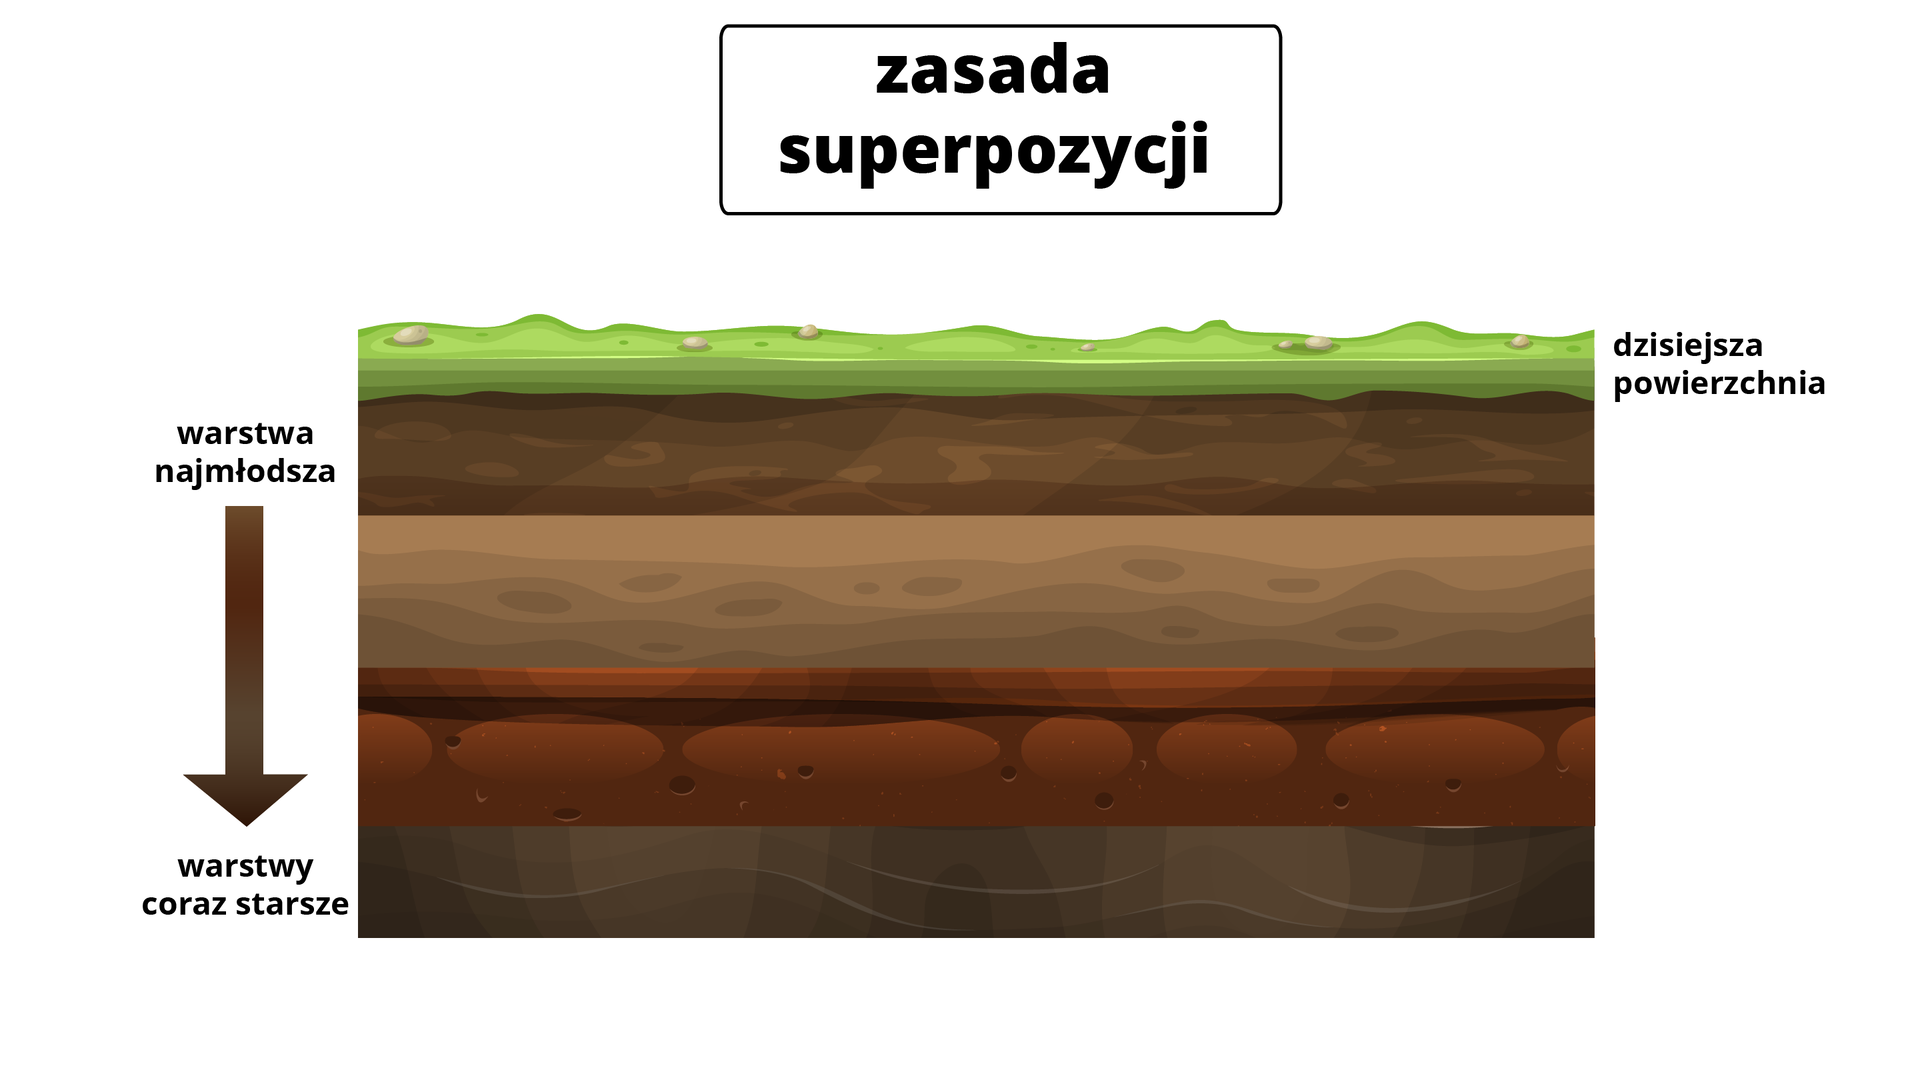 Ilustracja prezentuje zasadę superpozycji. Na ilustracji jest profil gleby z kolejnymi warstwami. Górna warstwa - zielona - to dzisiejsza powierzchnia. Kolejne warstwy są w odcieniach brązu. Warstwy najmłodsze są u góry przekroju, ich wiek rośnie w dół.  